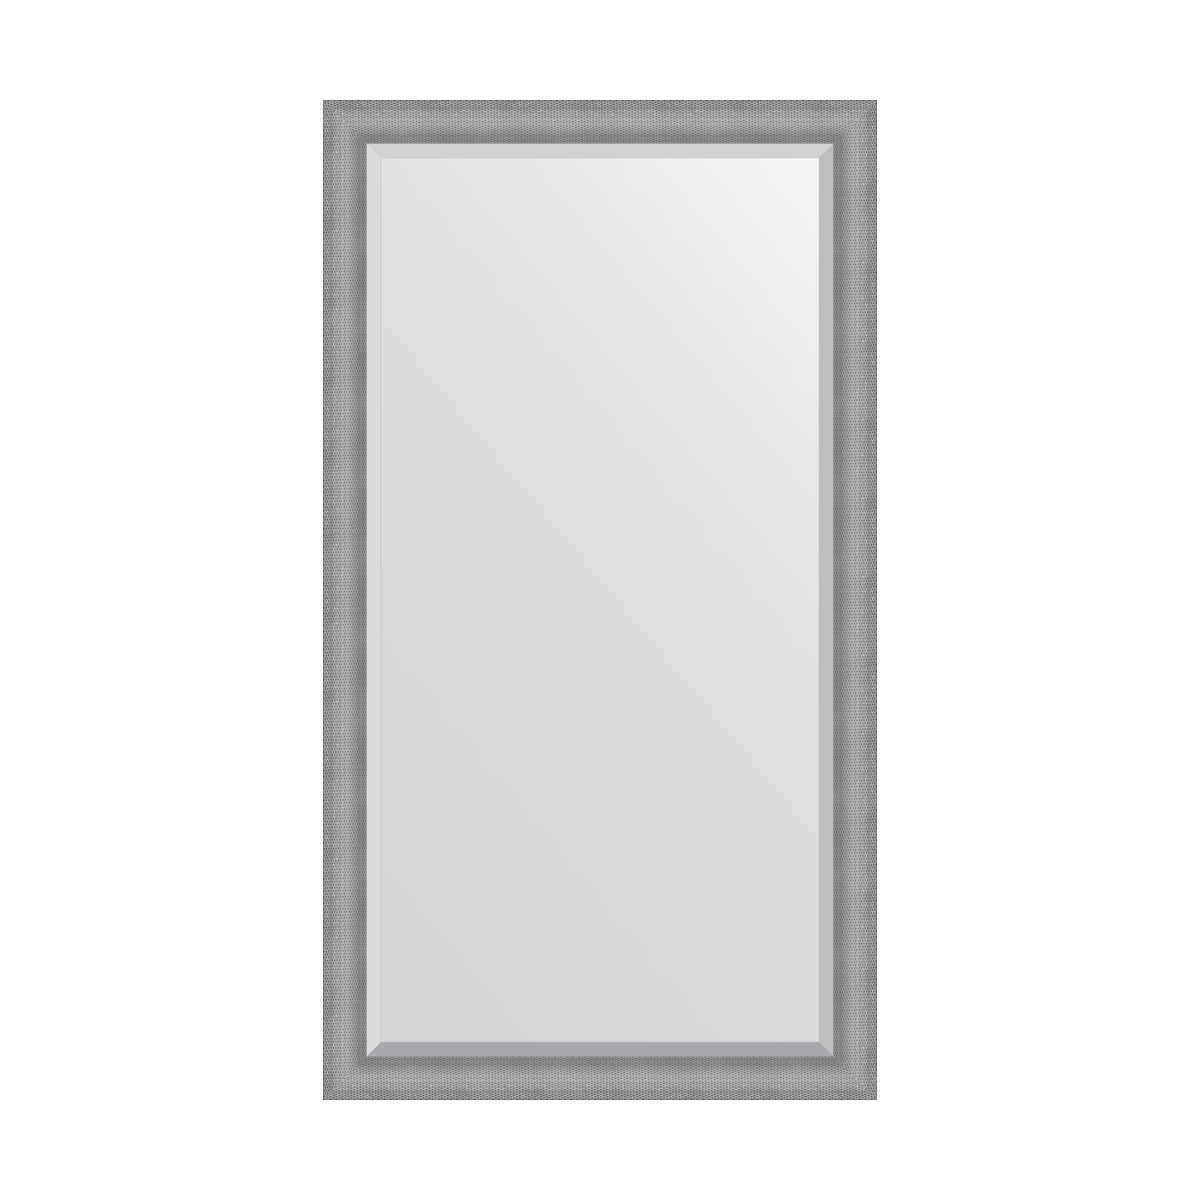 Зеркало напольное с фацетом в багетной раме Evoform серебряная кольчуга 88 мм 112x202 см зеркало напольное с гравировкой в багетной раме медная кольчуга 88 мм 112x202 см